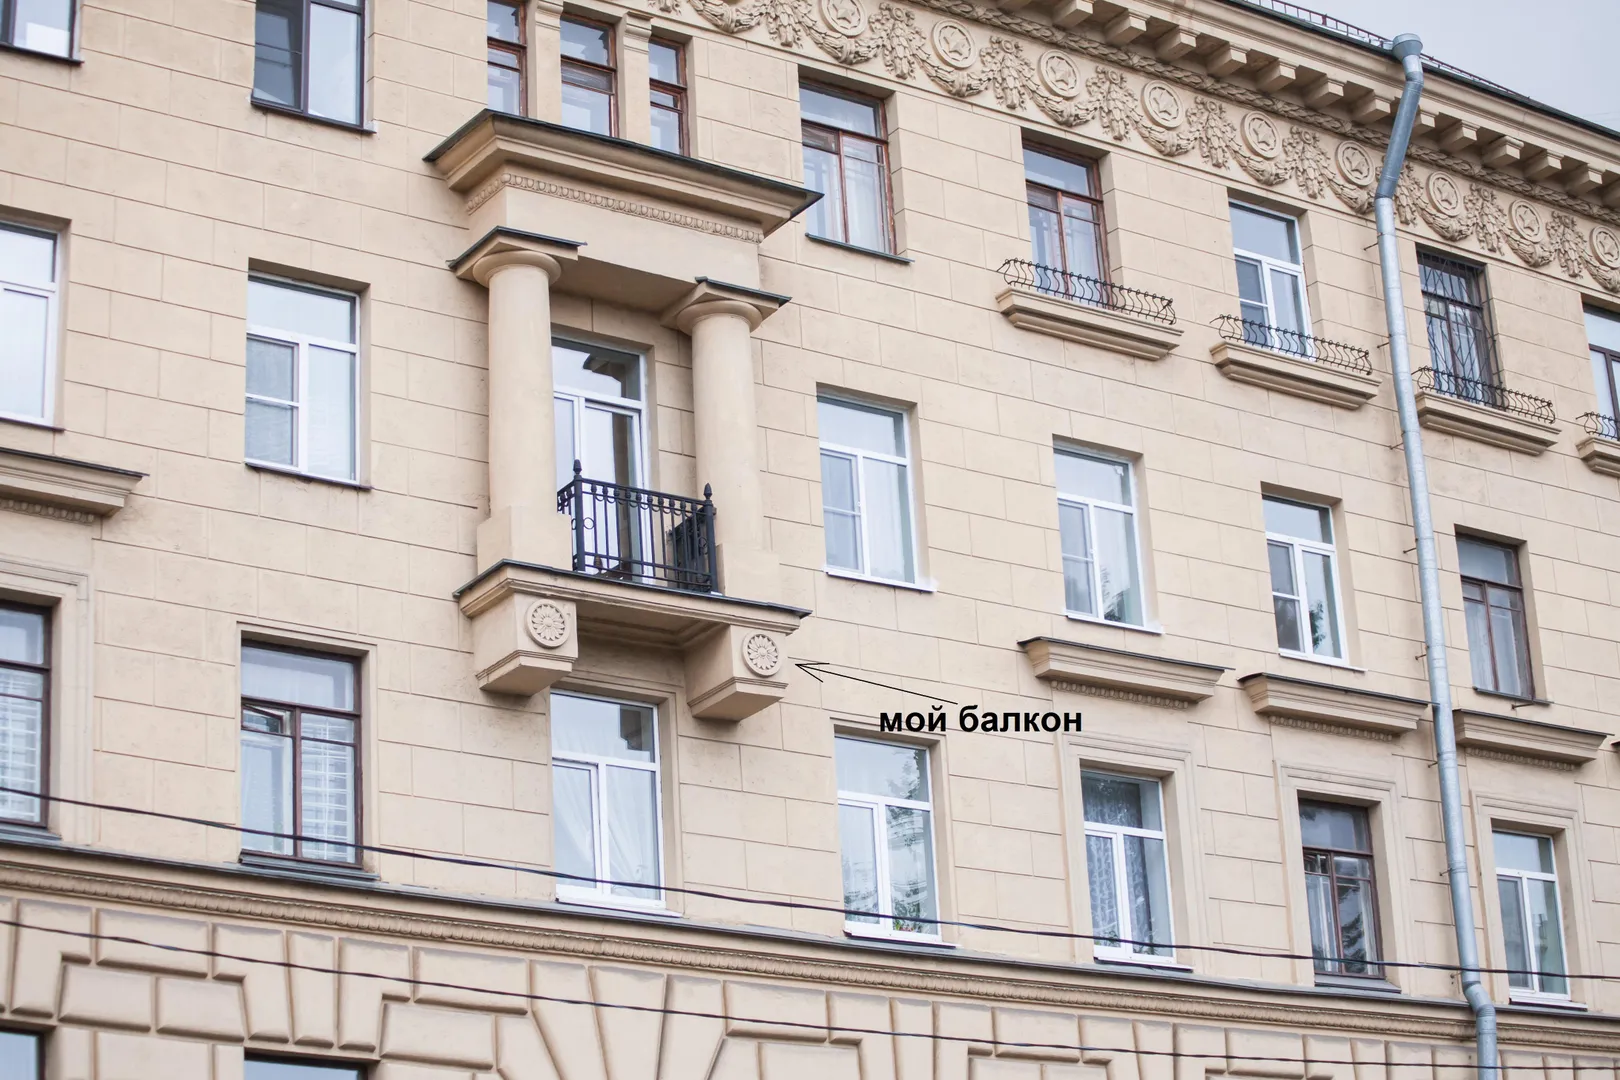 Балкон выходит на Кирочную улицу.